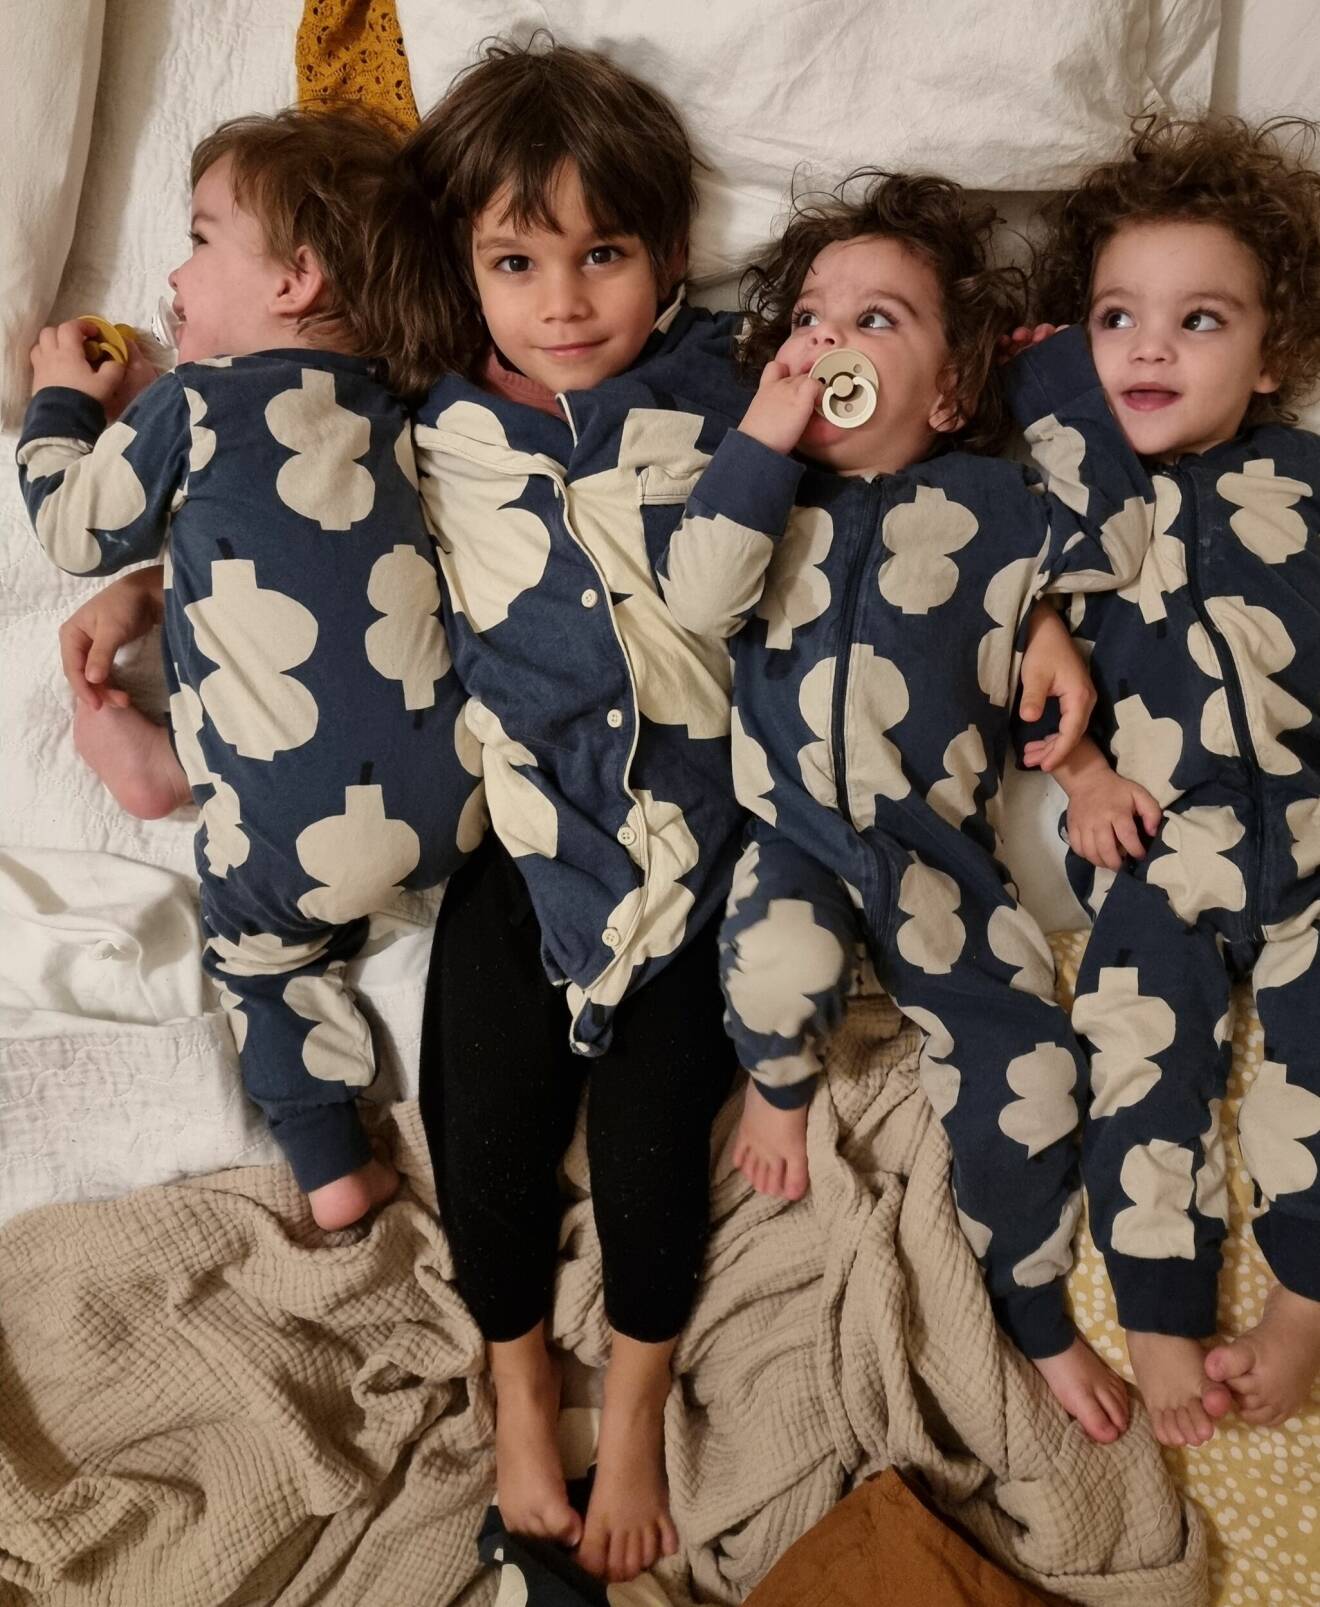 Barnen Minna, Allan, Noah och Minou myser i sängen